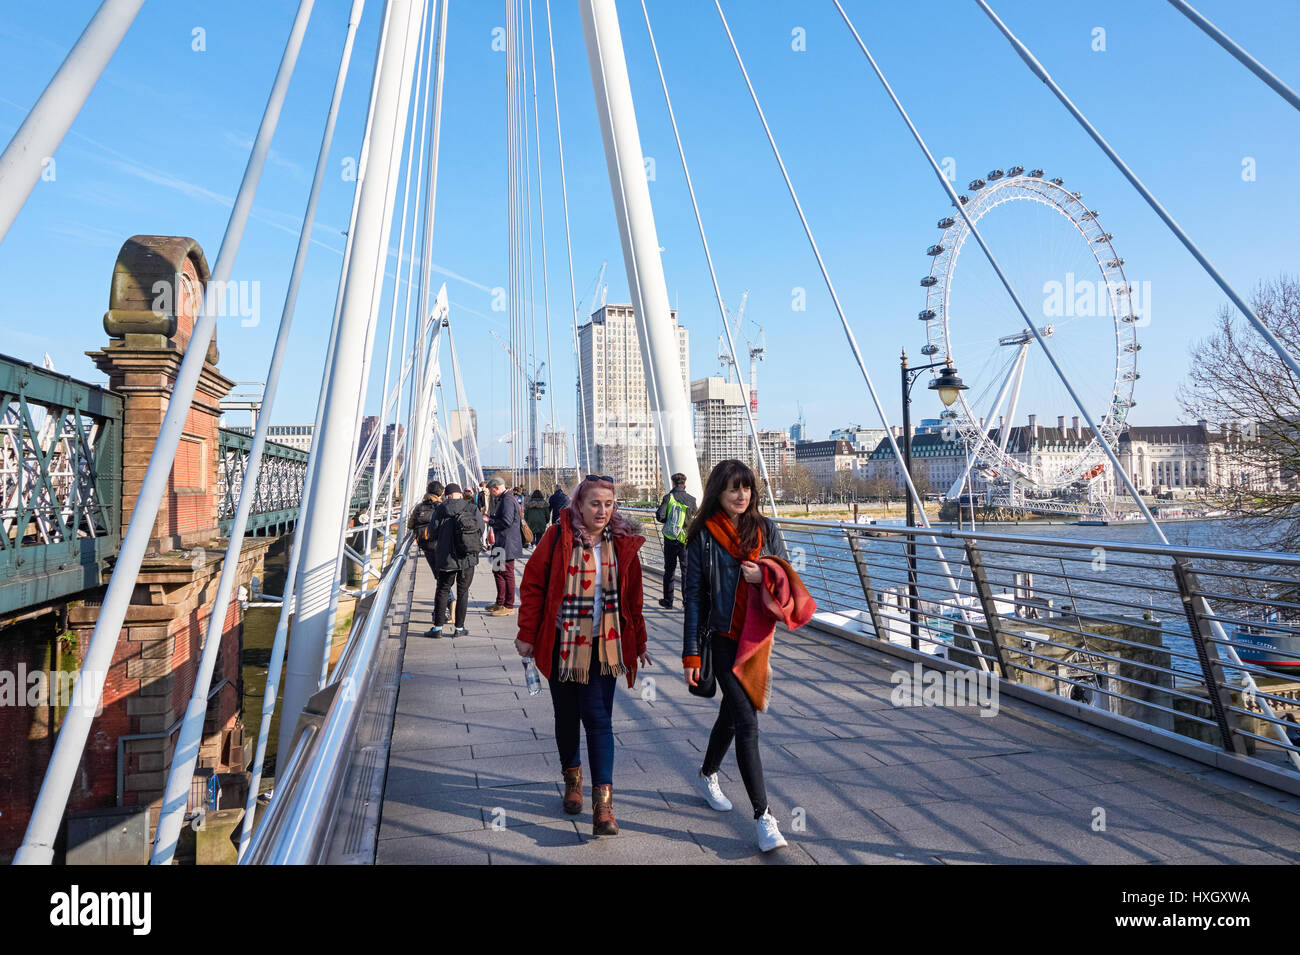 Les gens au Golden Jubilee Bridges, Londres Angleterre Royaume-Uni UK Banque D'Images